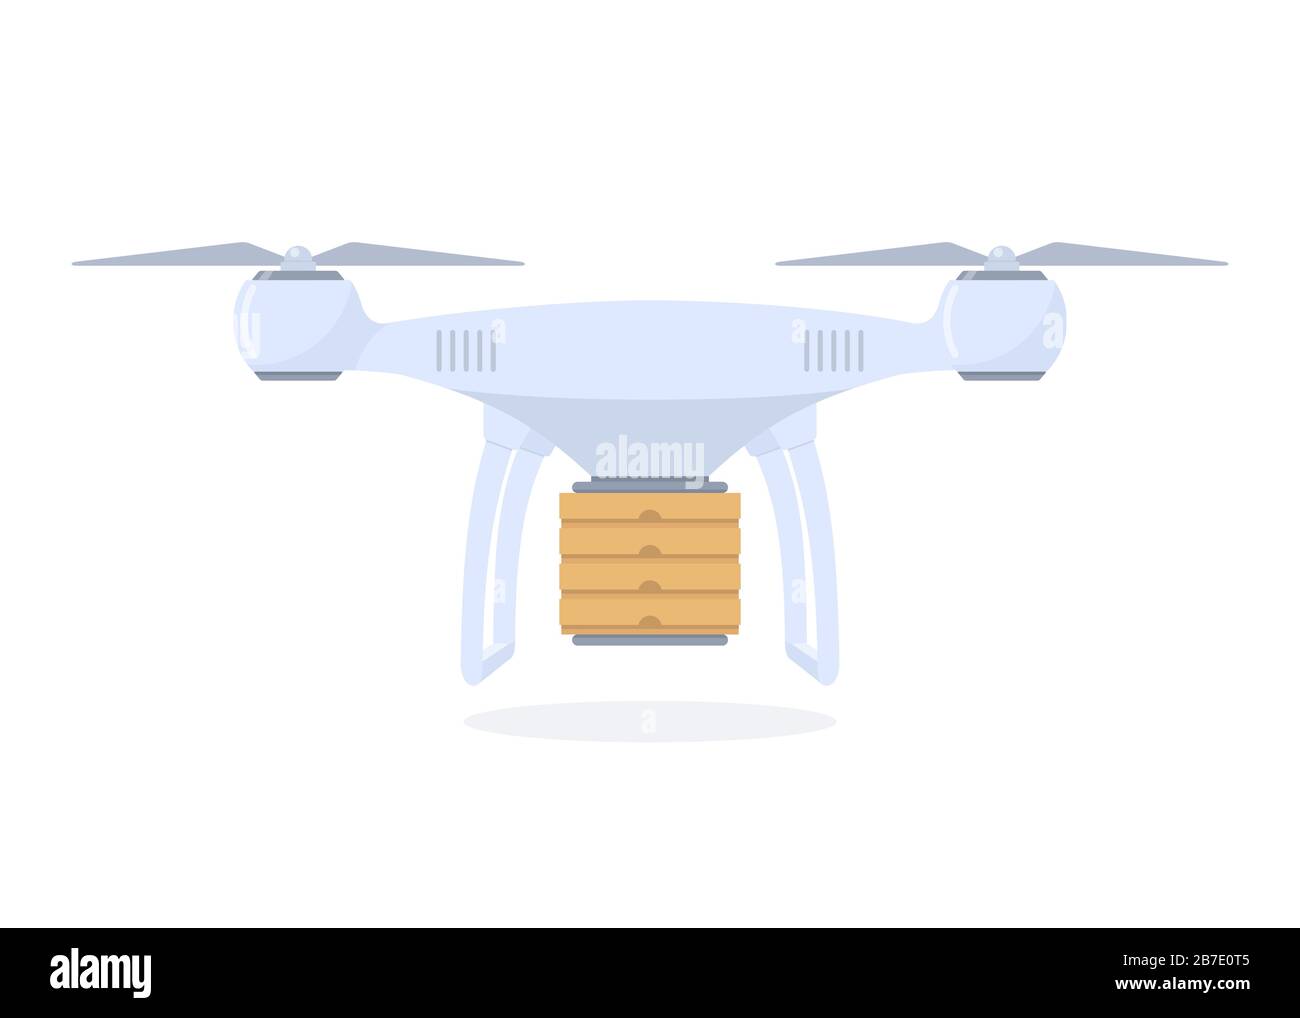 Illustrazione del concetto di consegna dei droni. Quadrocopter consegna con scatole per pizza. Illustrazione vettoriale in stile piatto Illustrazione Vettoriale